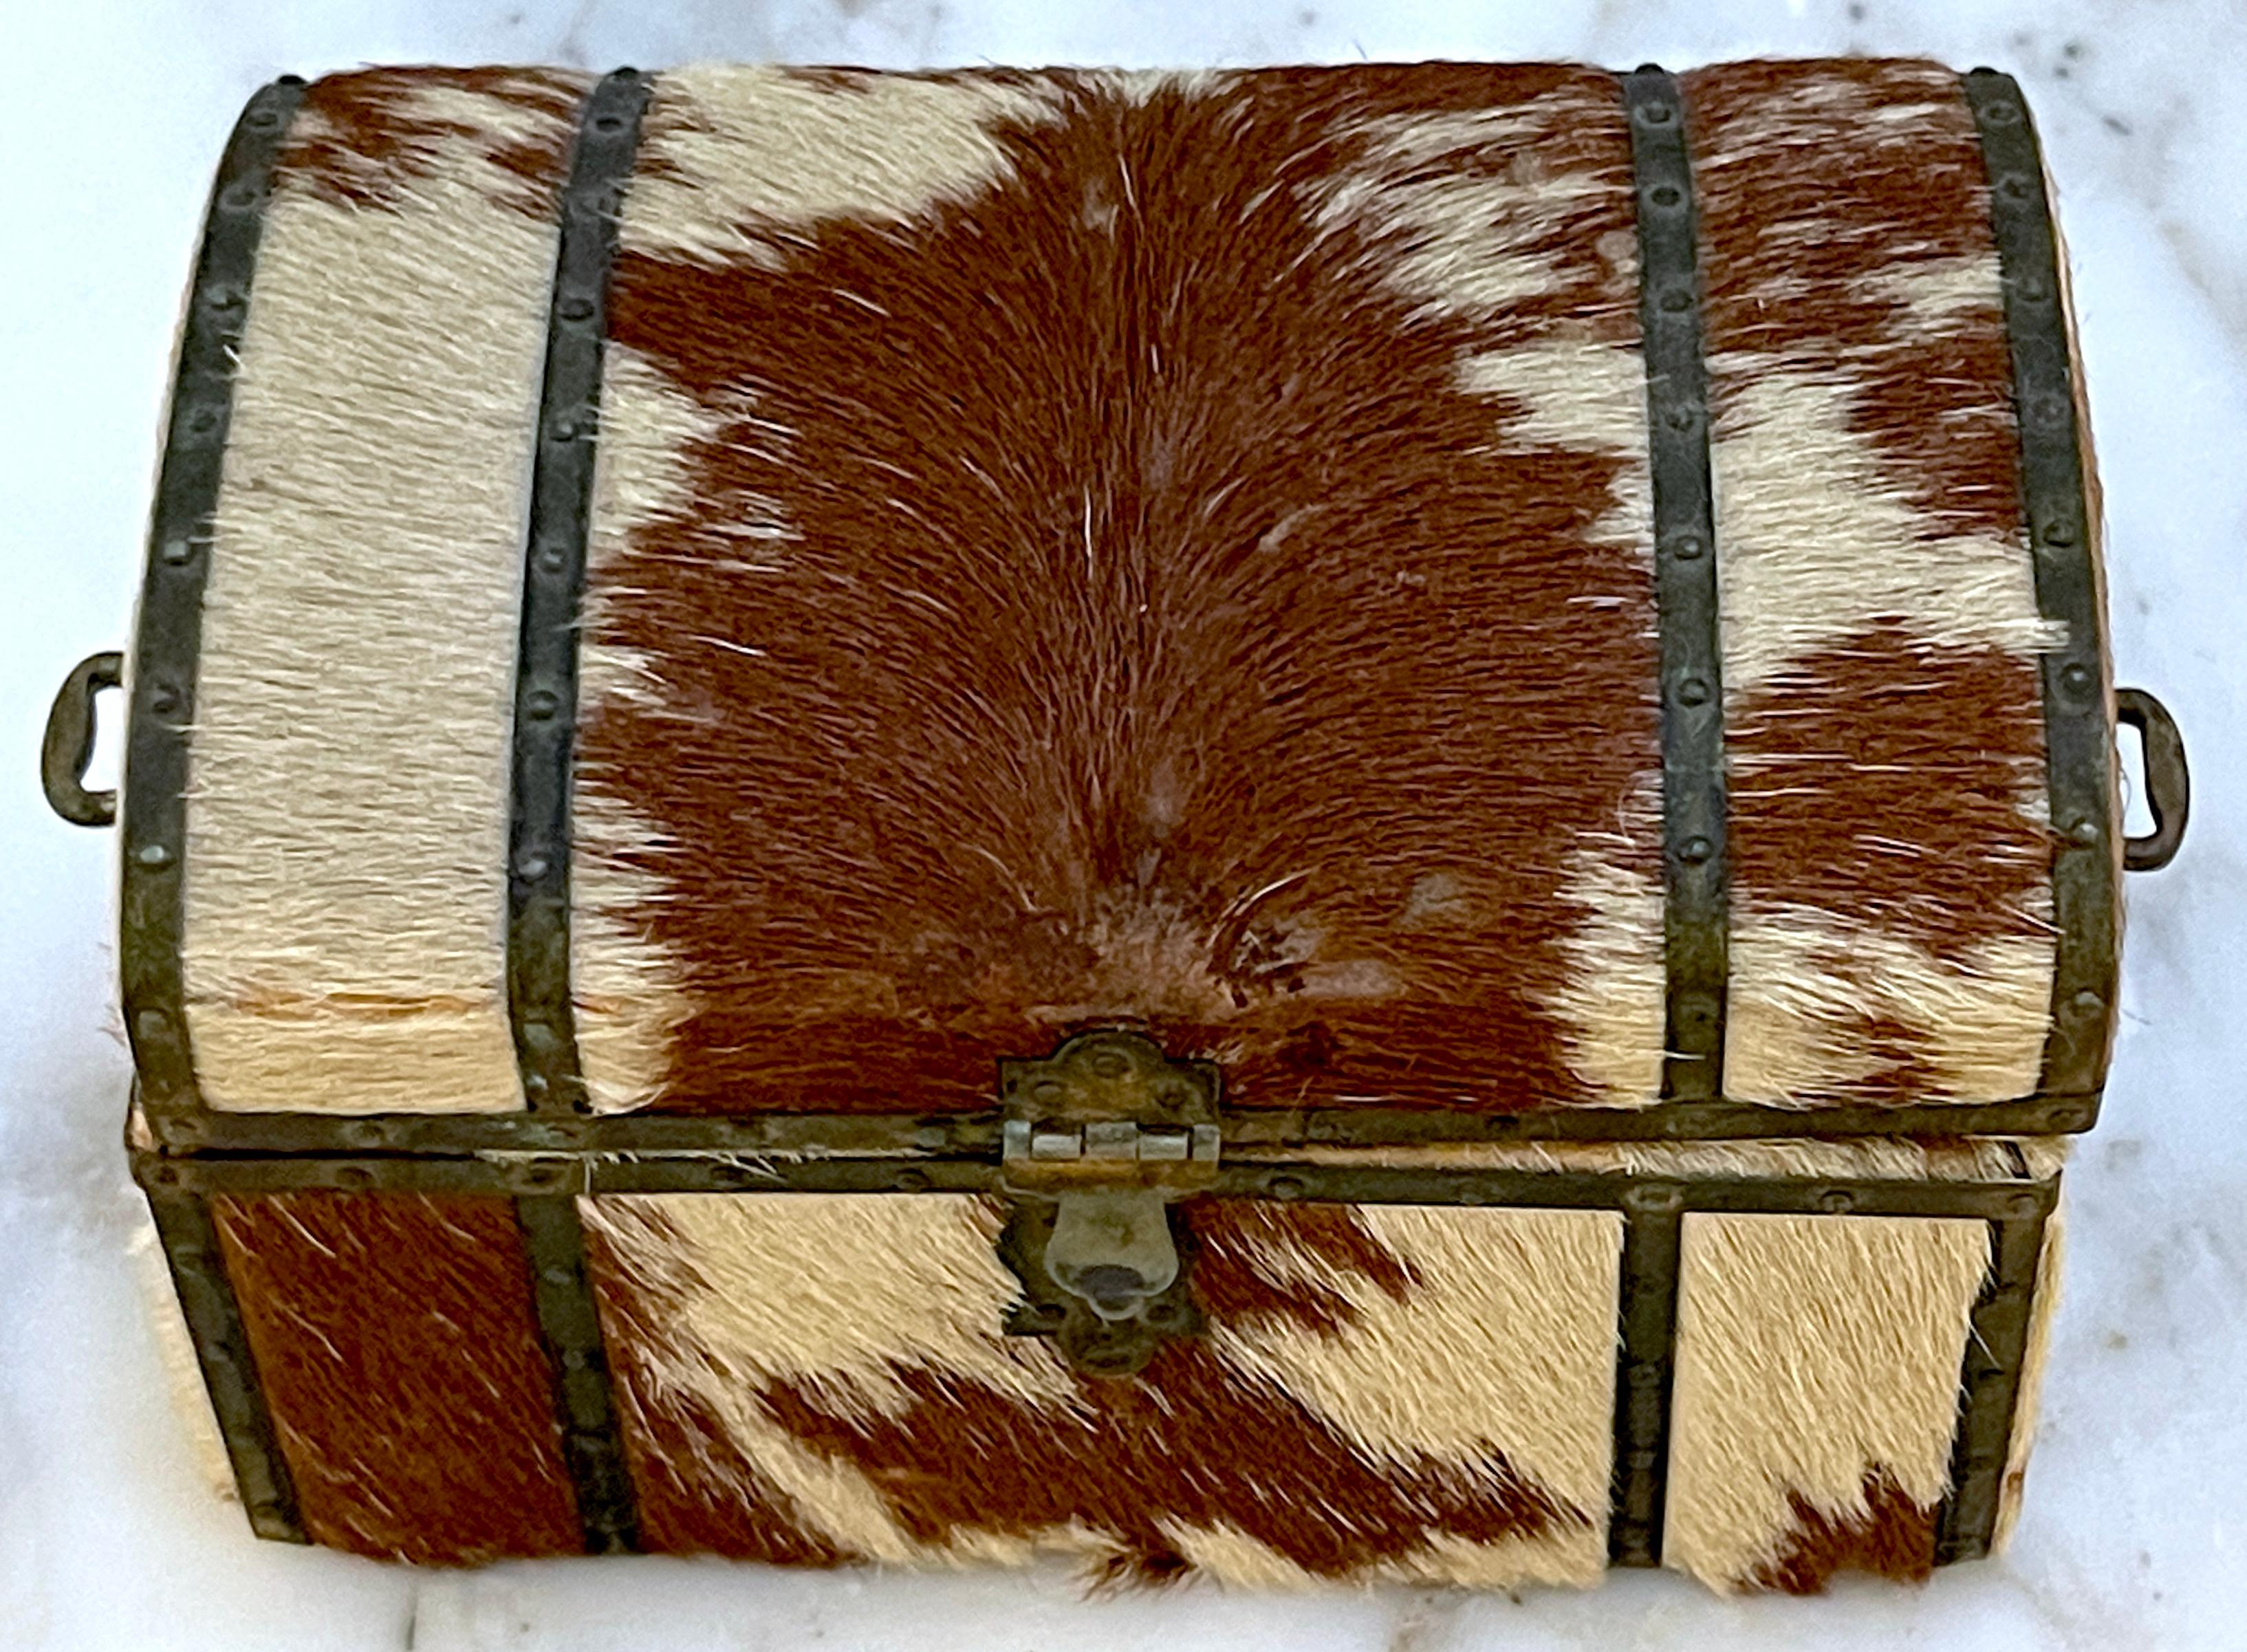 Boîte à dômes en cuir de vachette et laiton du 19e siècle 
États-Unis, vers 1890

Cette exquise boîte à dôme en cuir de vachette et en laiton, datant du XIXe siècle et provenant des États-Unis vers les années 1890, témoigne à la fois de l'artisanat